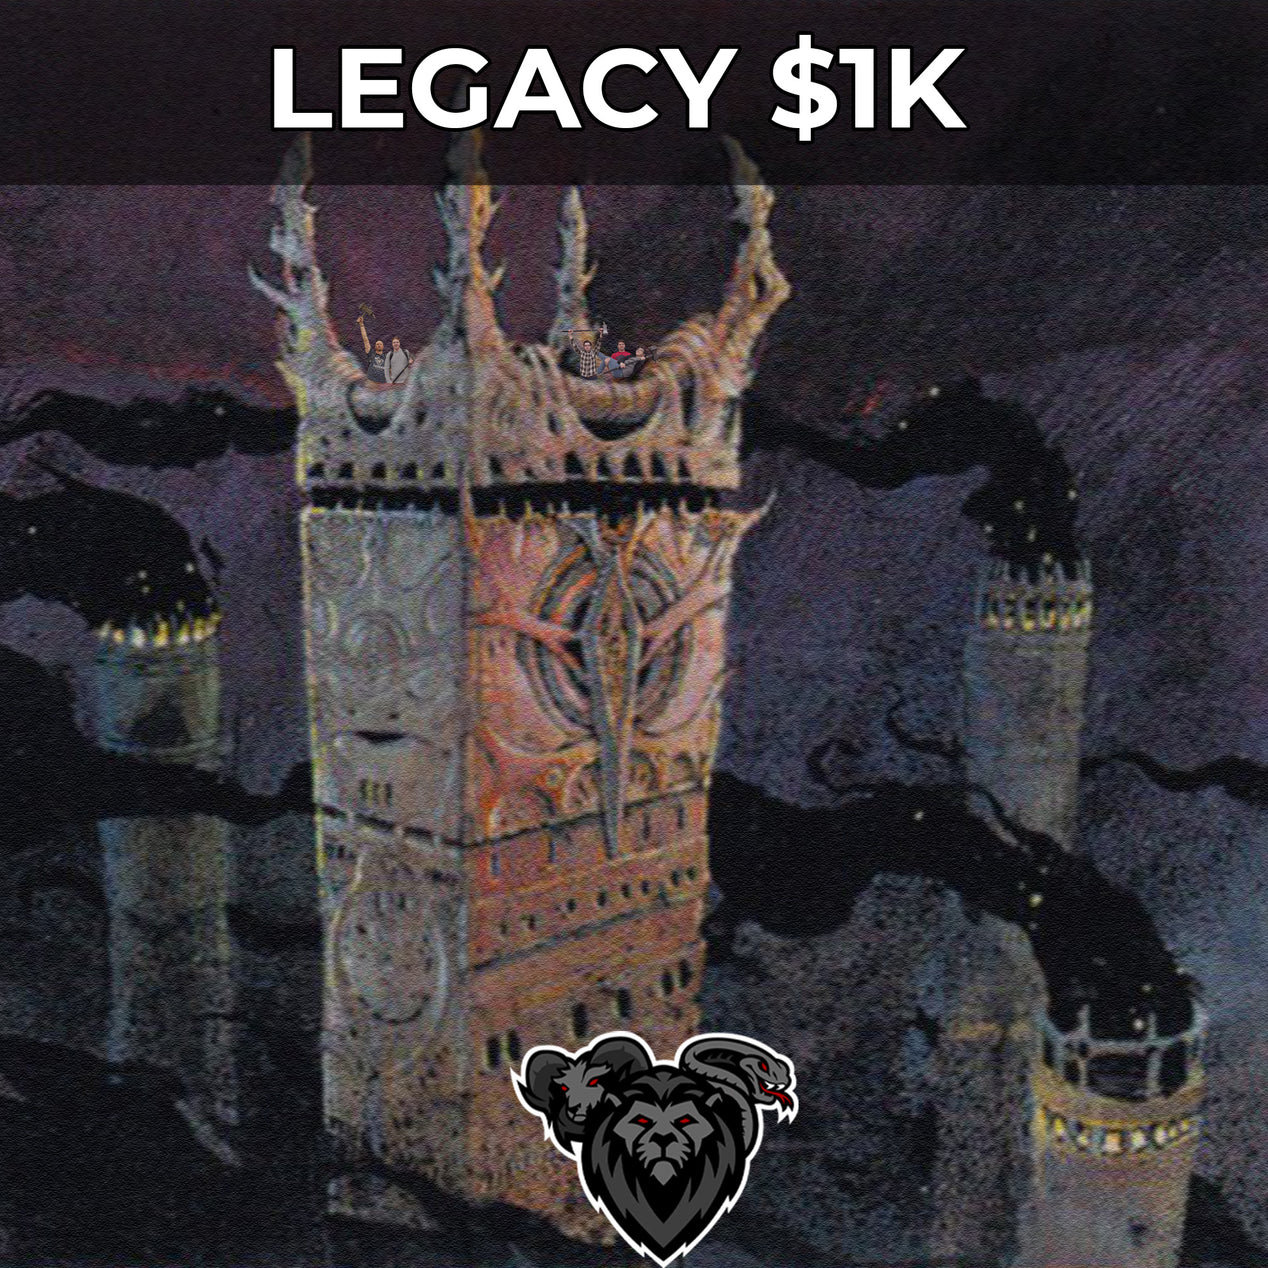 $1K Legacy Decklist, August 6th, 2023